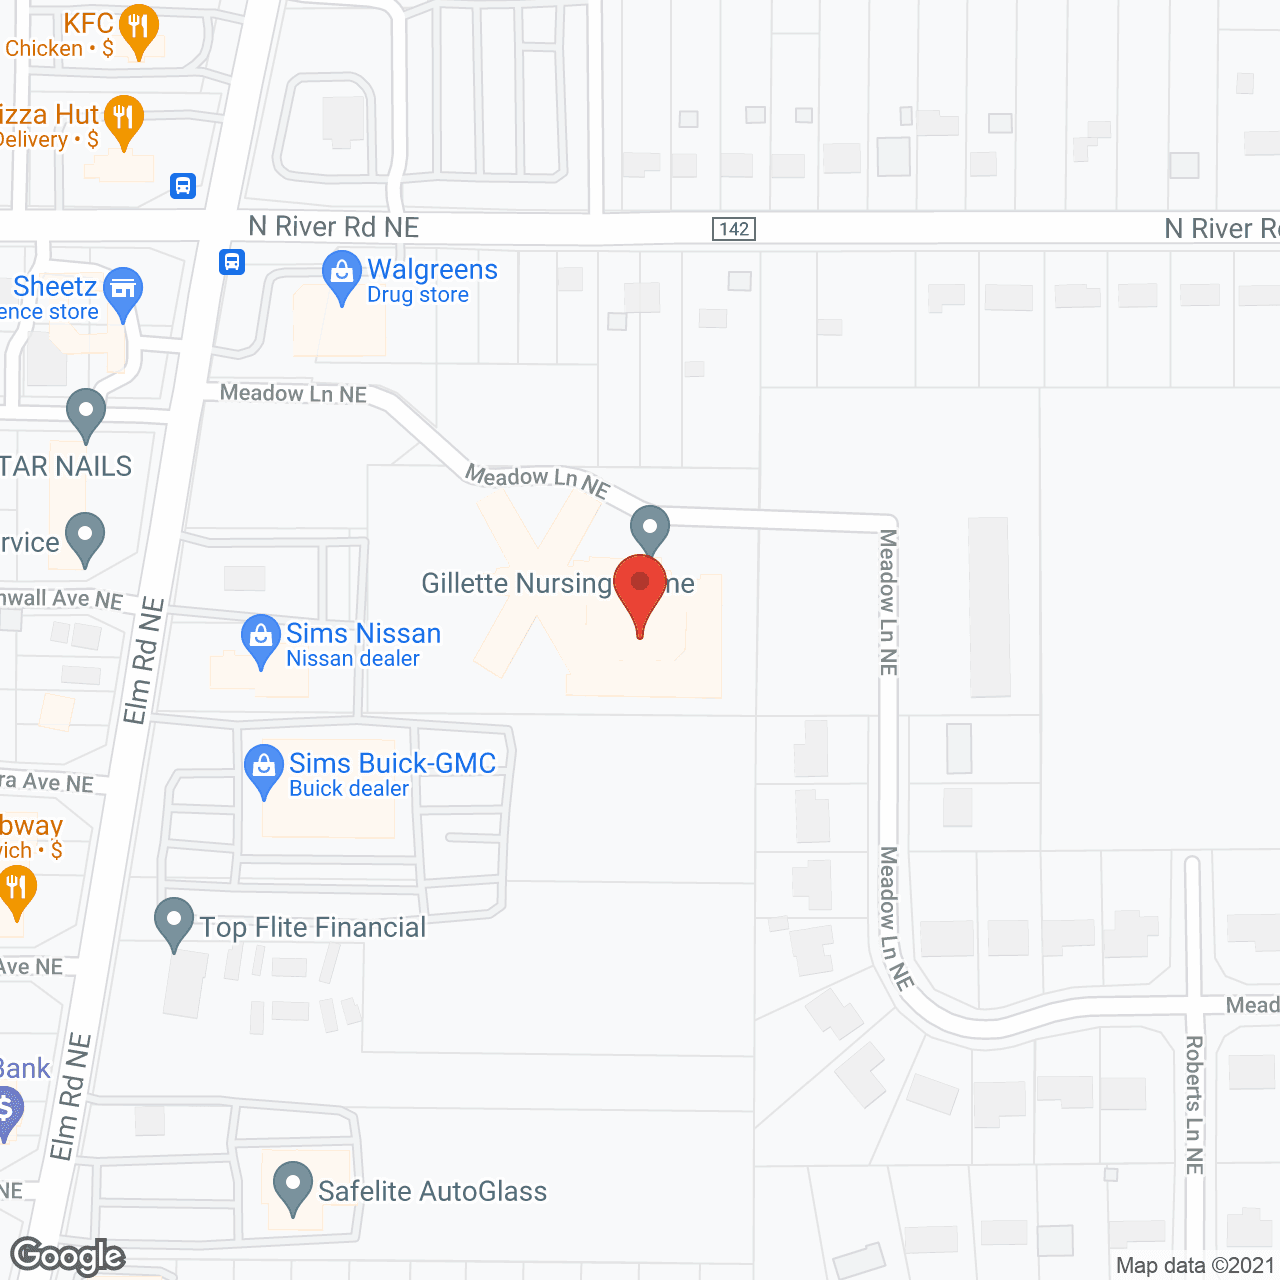 Gillette Nursing Home in google map